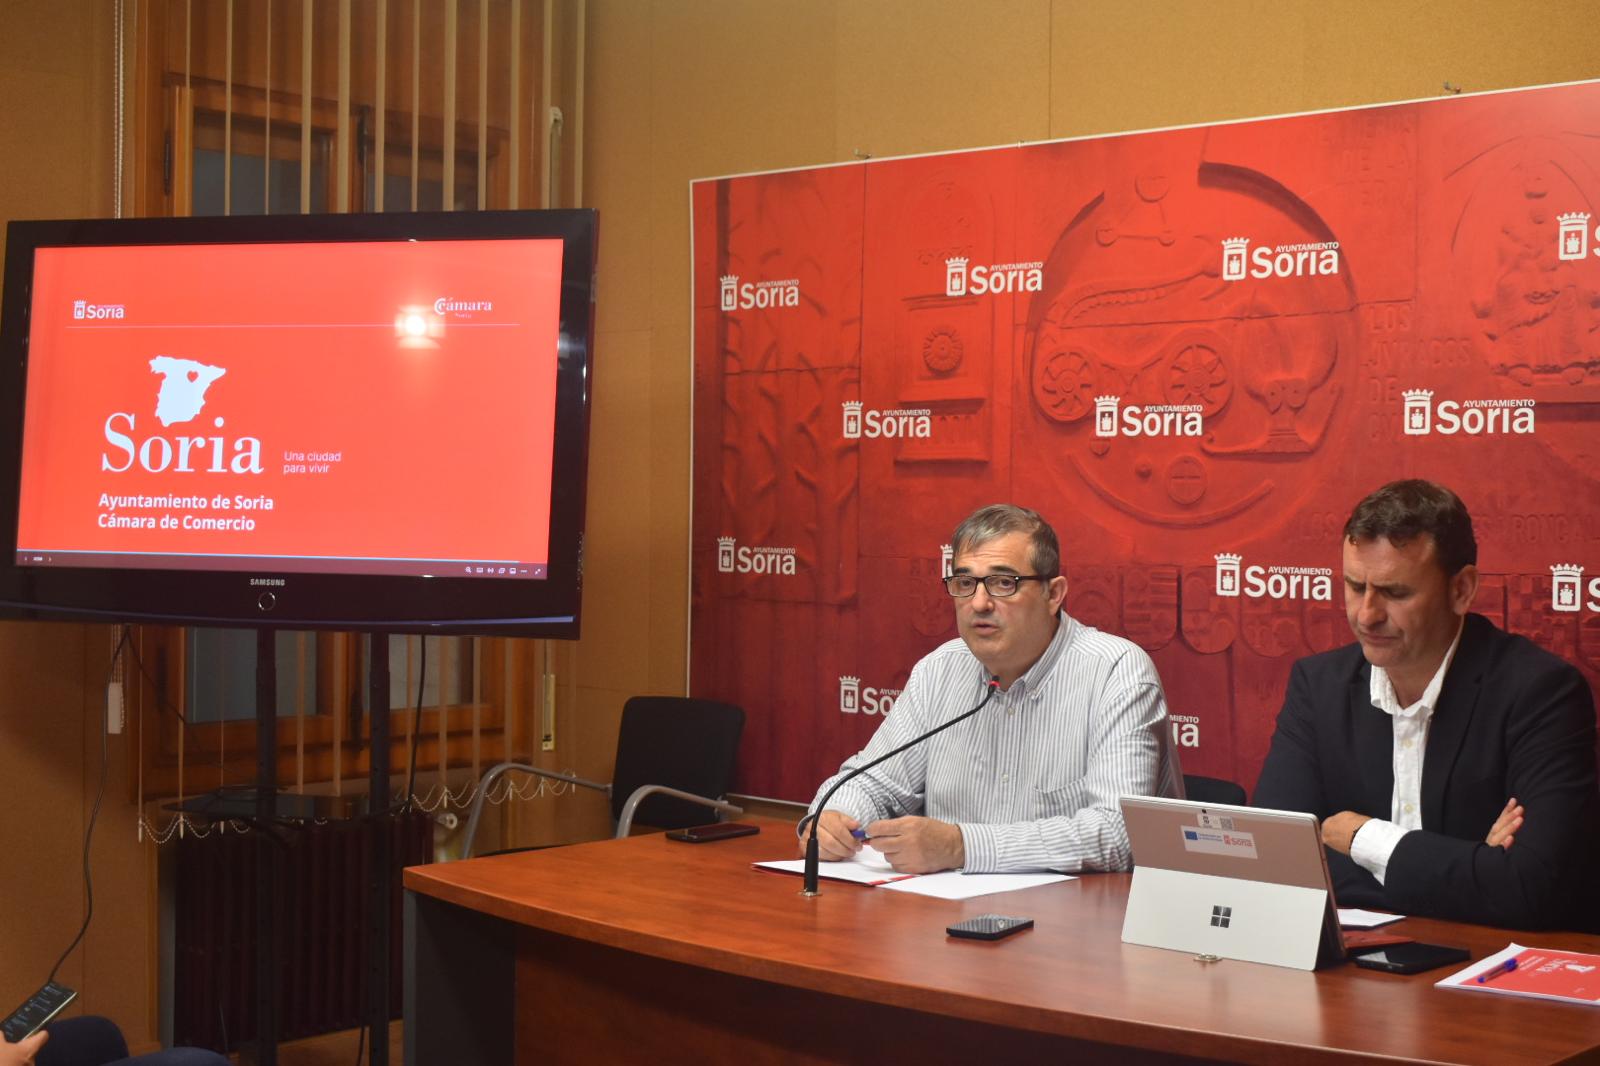 Soria presenta el proyecto “Una ciudad para vivir” con medidas para atraer población y empresas y poniendo el foco en la calidad de vida, la búsqueda proactiva y la atención personal